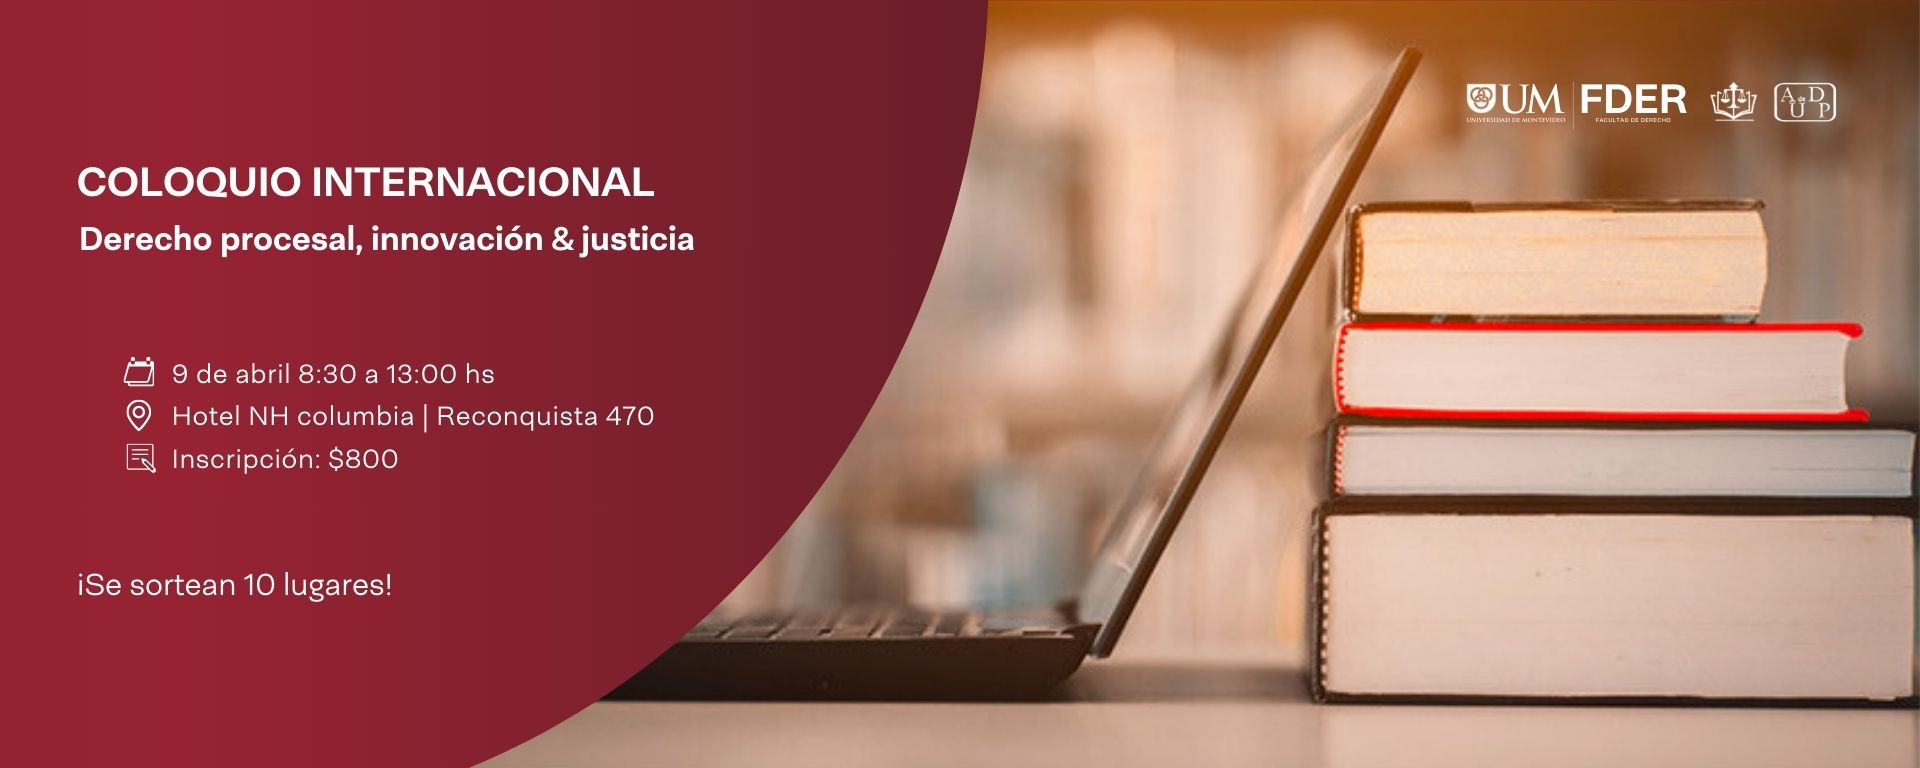 Coloquio internacional: Derecho procesal, innovación y justicia